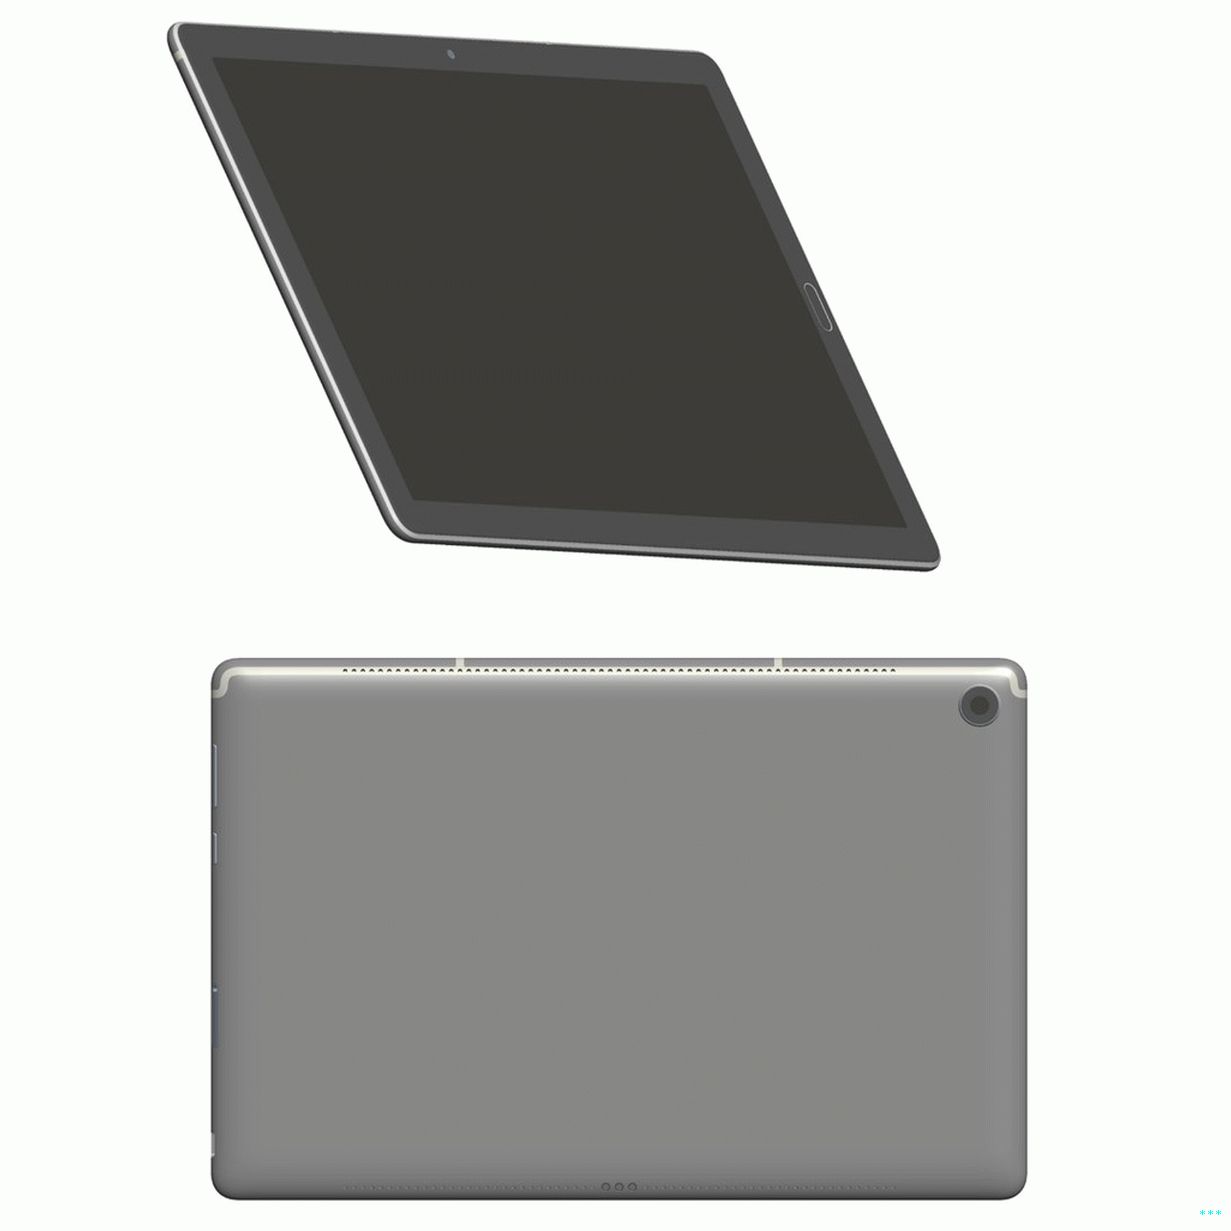 MediaPad M5 10.1